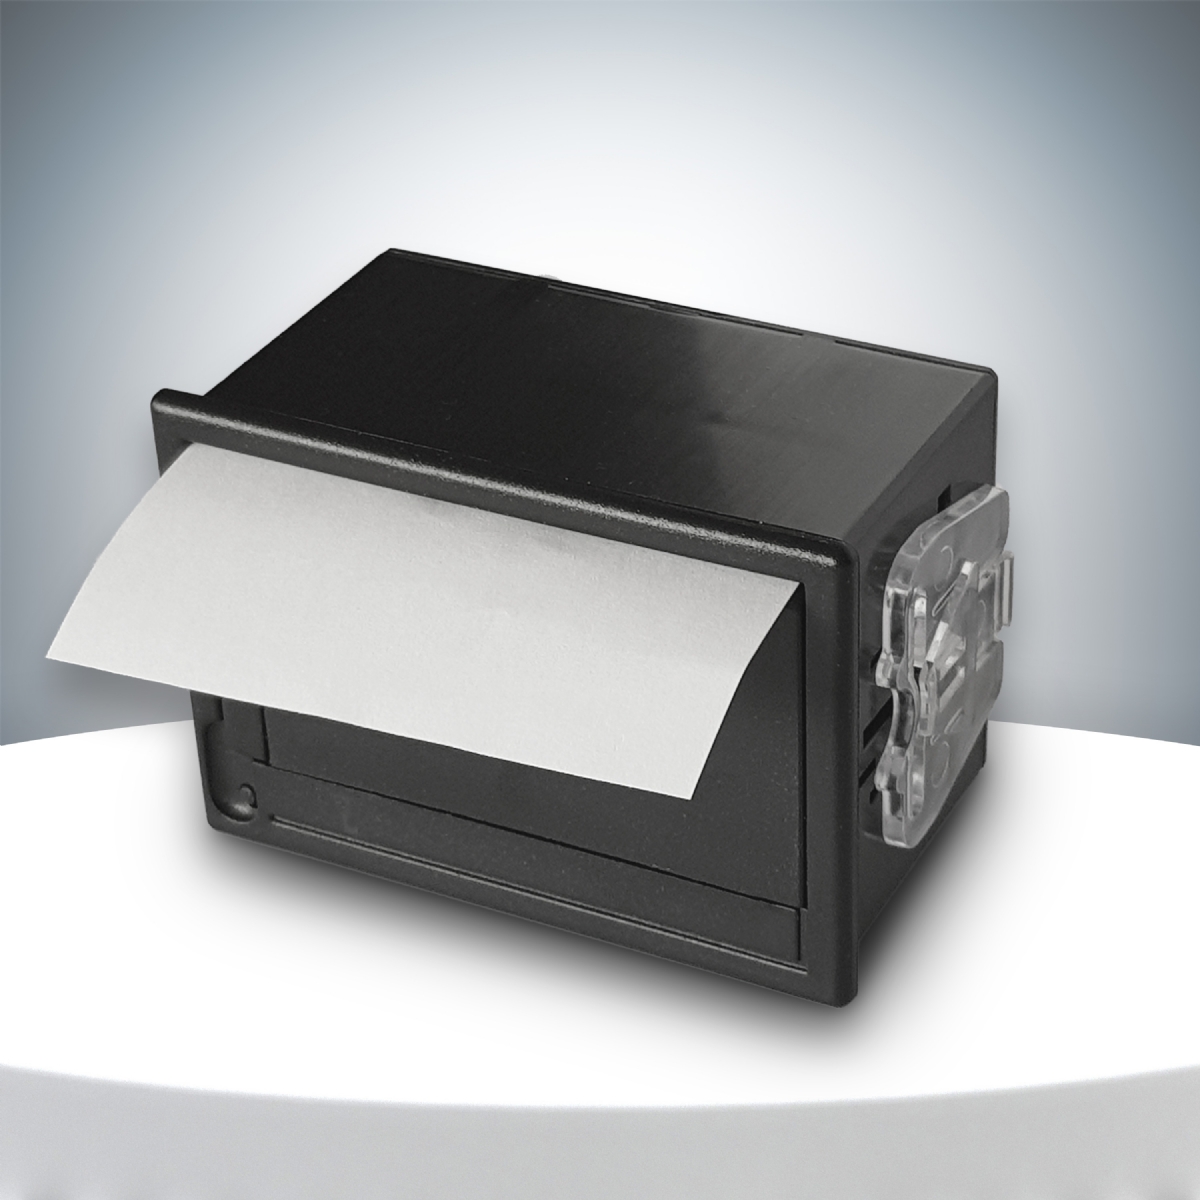 I-1000-4 P Mini Integrated Thermal Printer